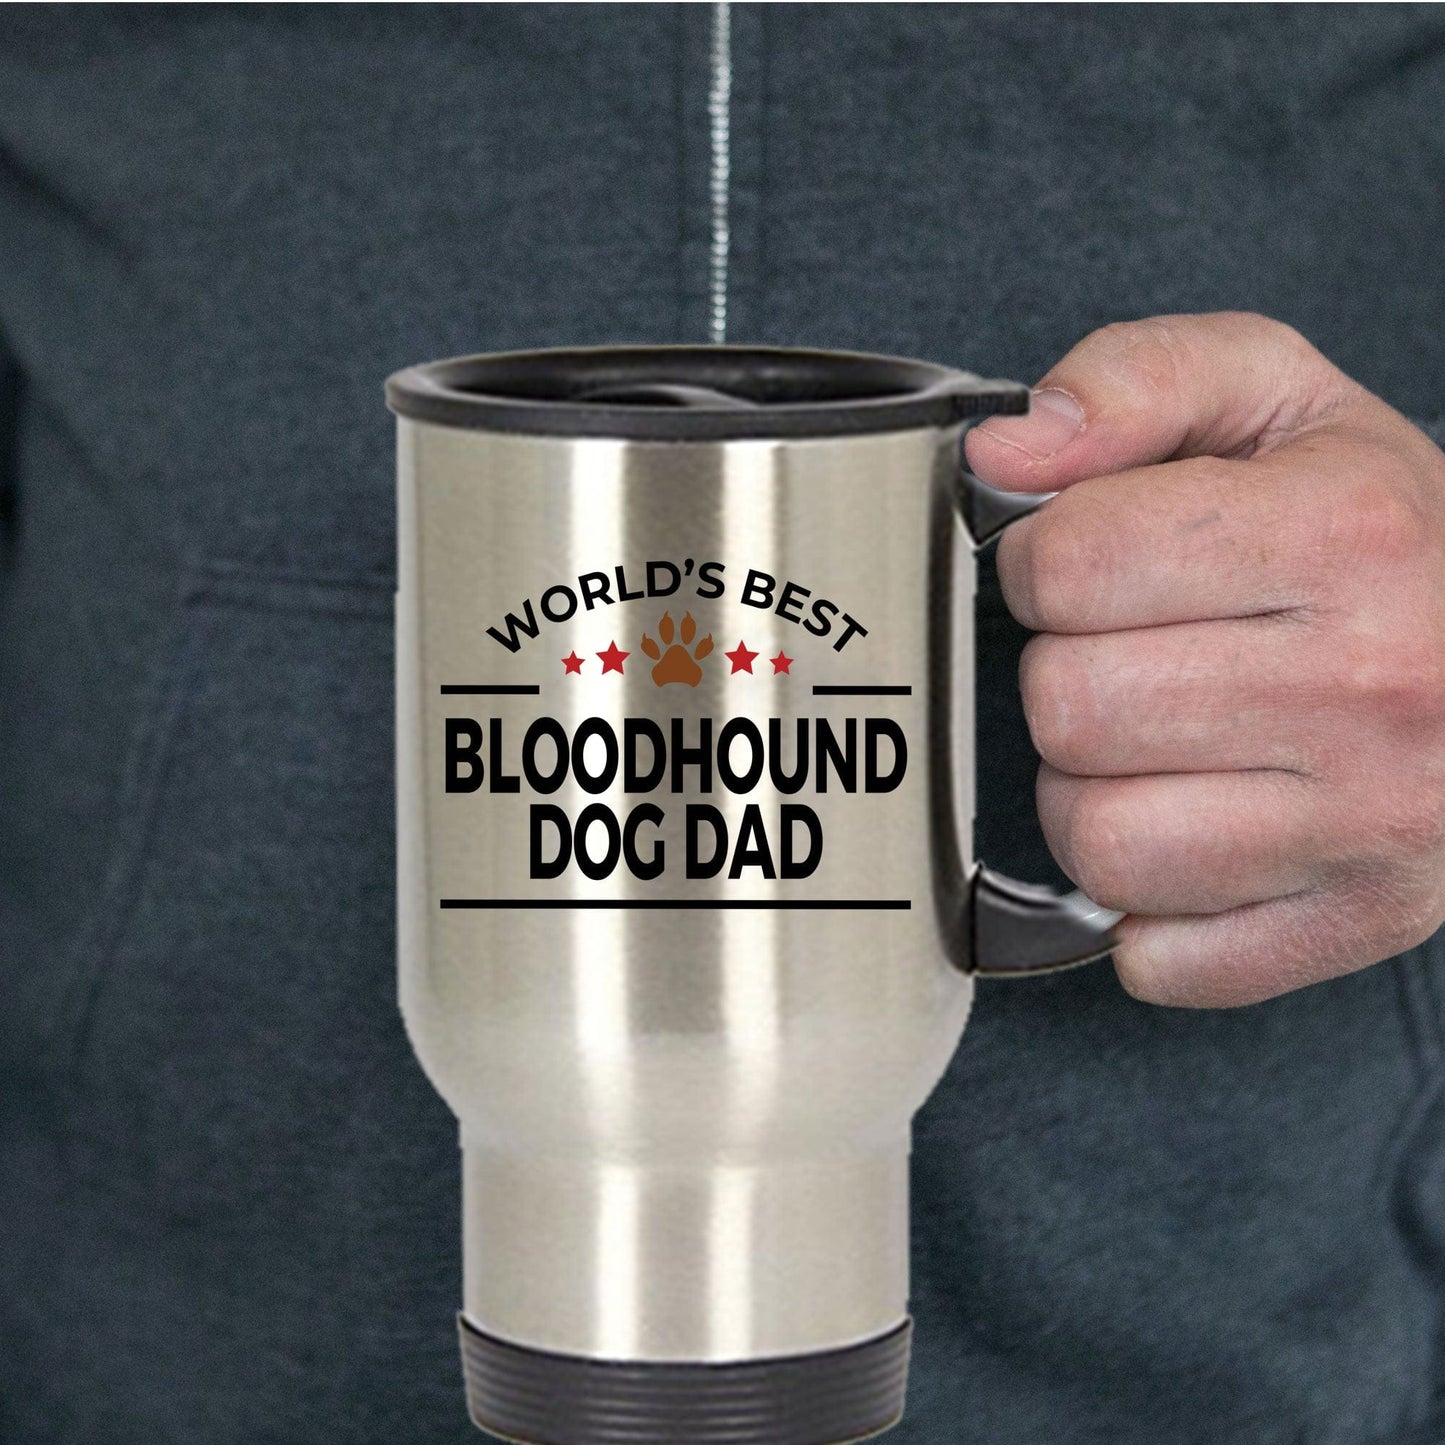 Bloodhound Dog Dad Travel Coffee Mug